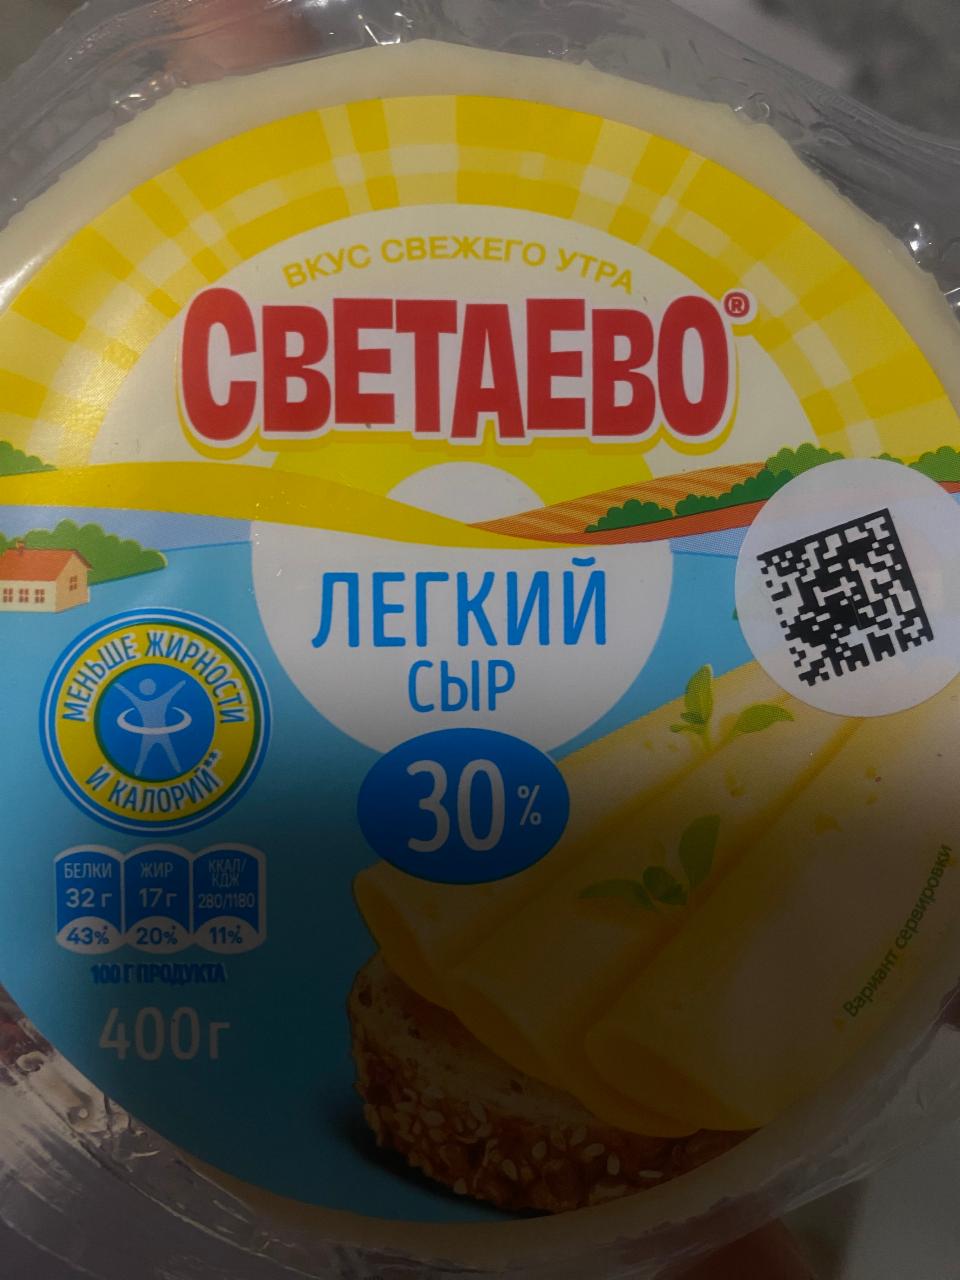 Фото - Сыр лёгкий 30% Светаево